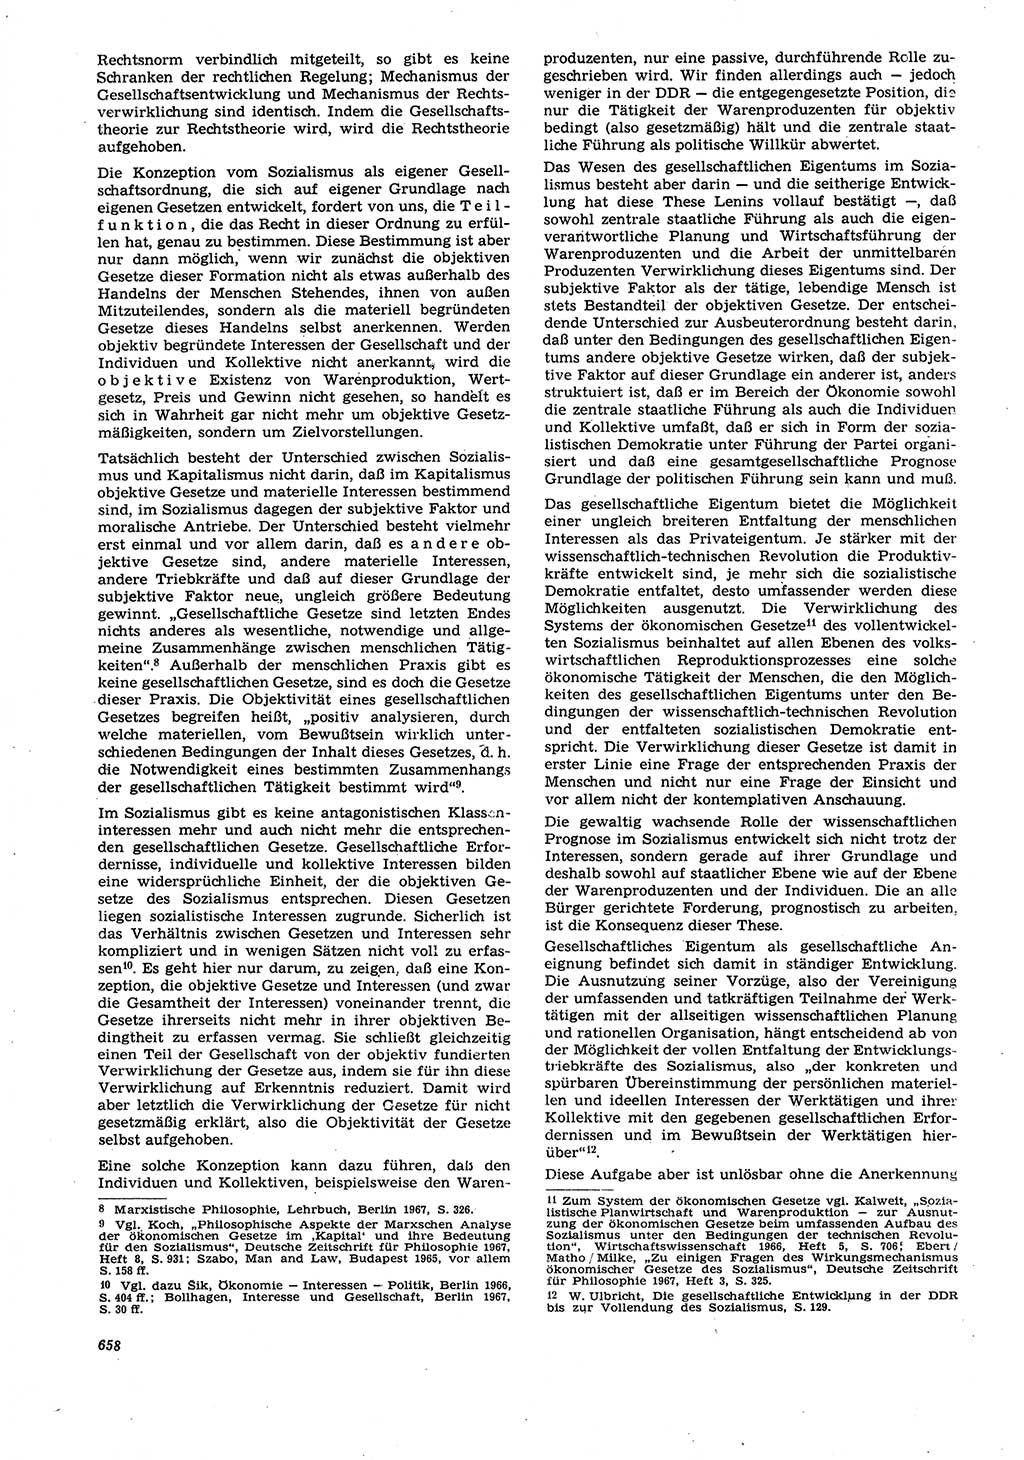 Neue Justiz (NJ), Zeitschrift für Recht und Rechtswissenschaft [Deutsche Demokratische Republik (DDR)], 21. Jahrgang 1967, Seite 658 (NJ DDR 1967, S. 658)